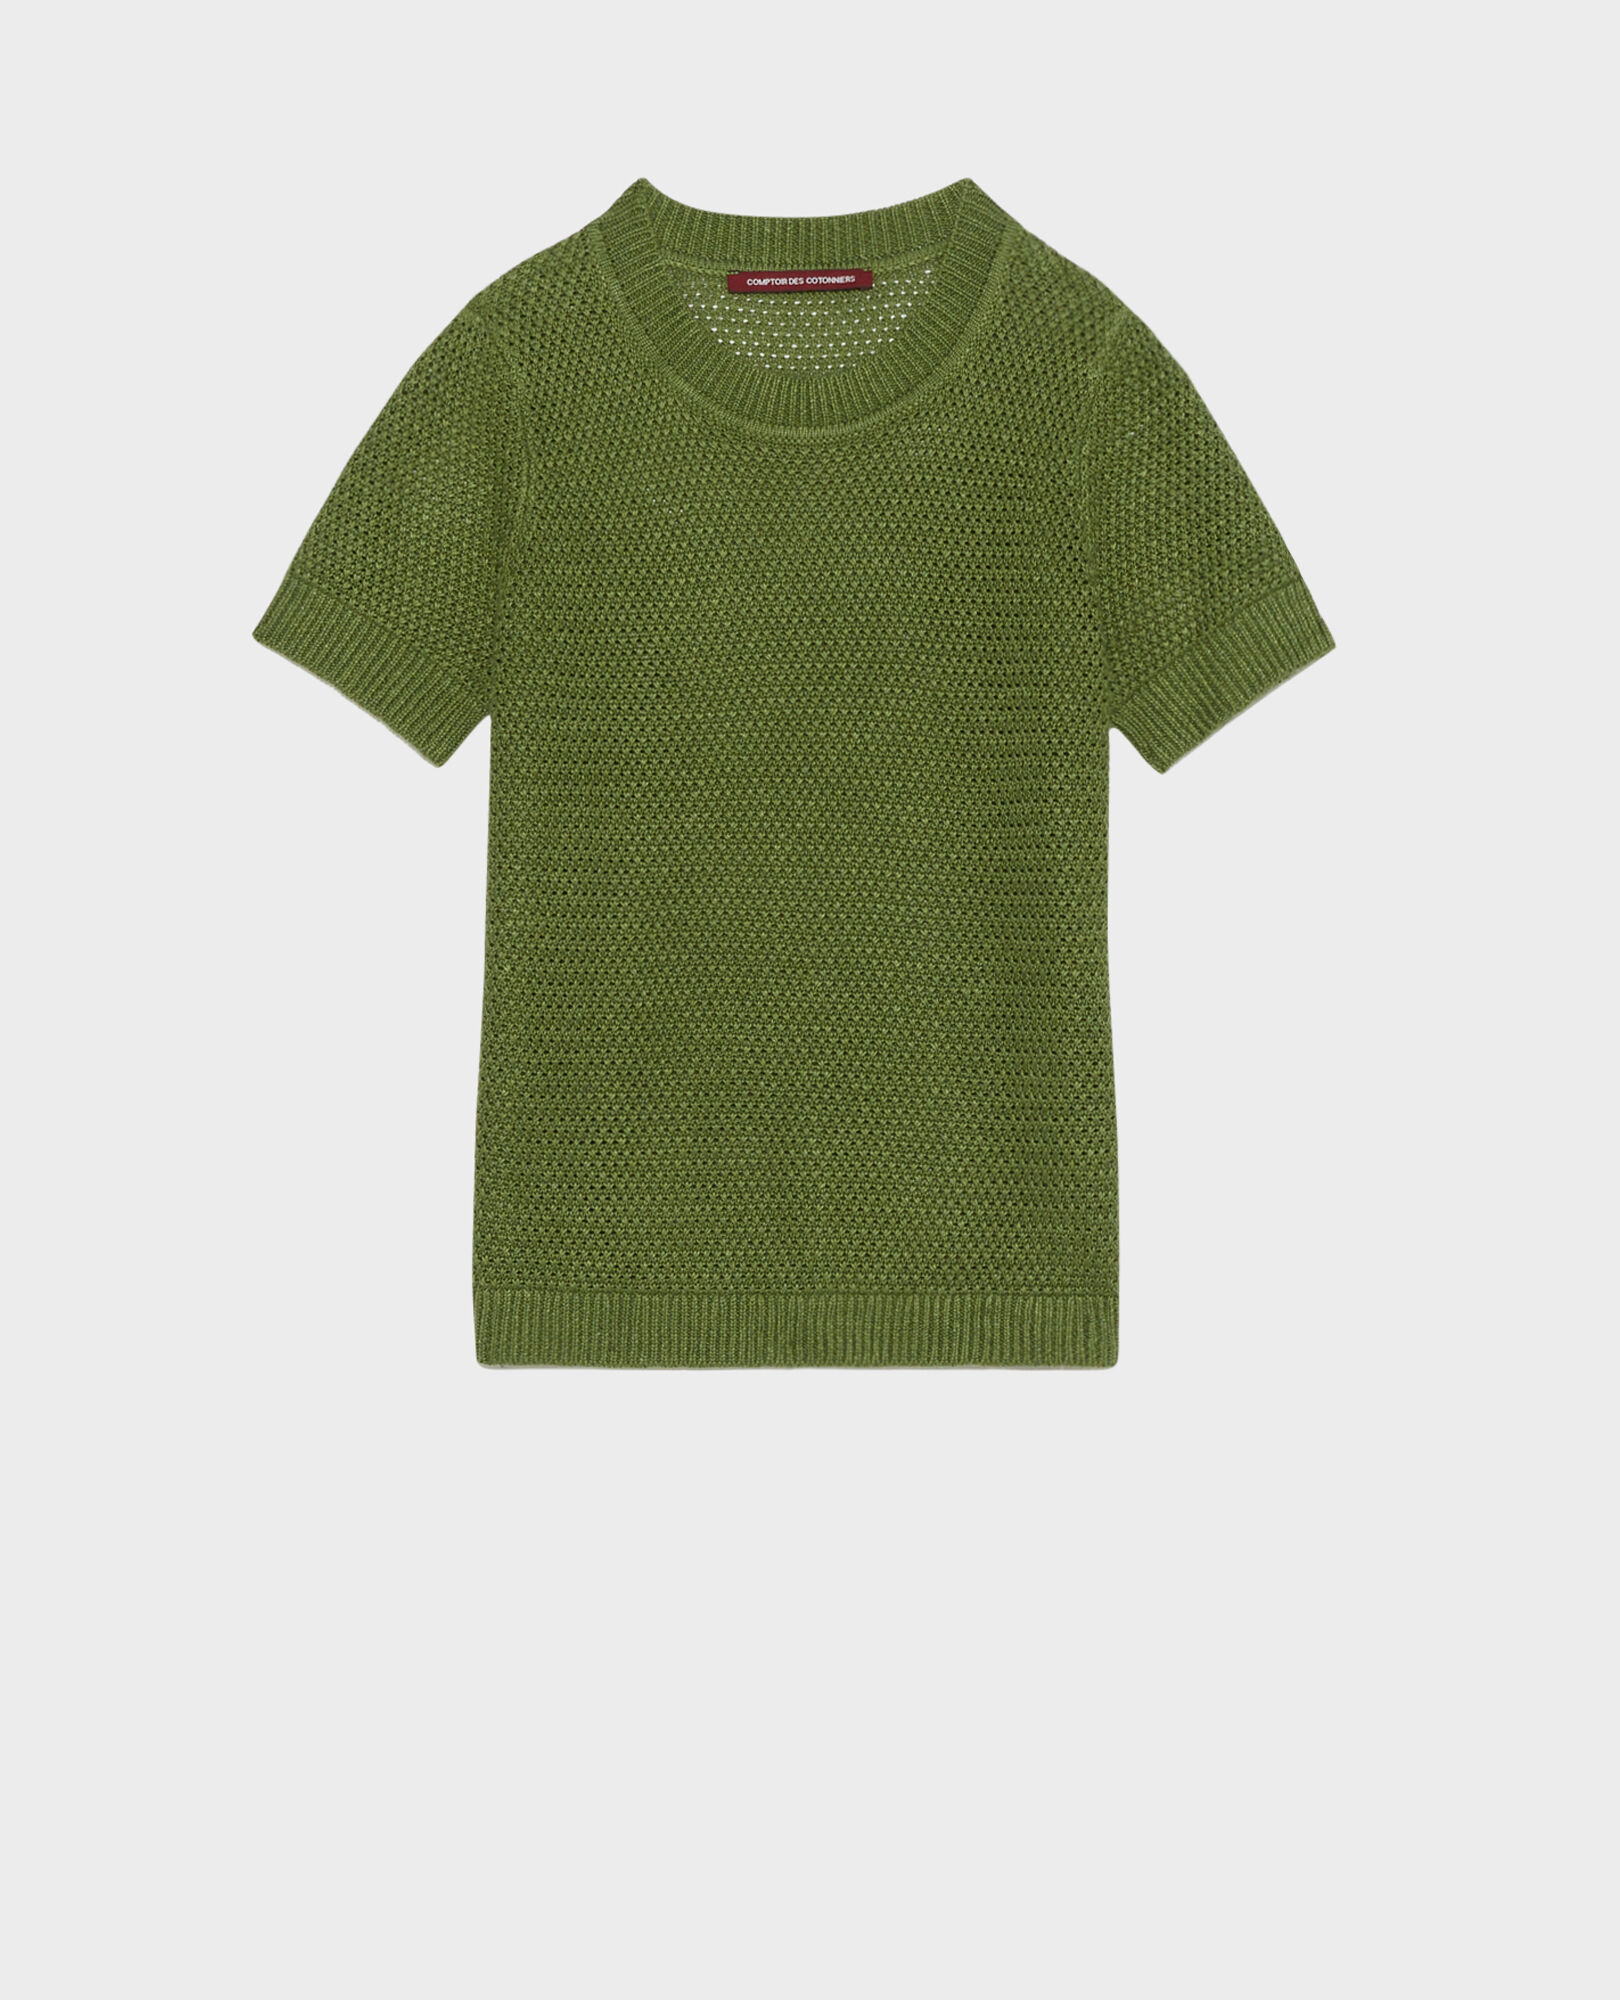 Short-sleeve linen jumper 52 green 2sju430f04